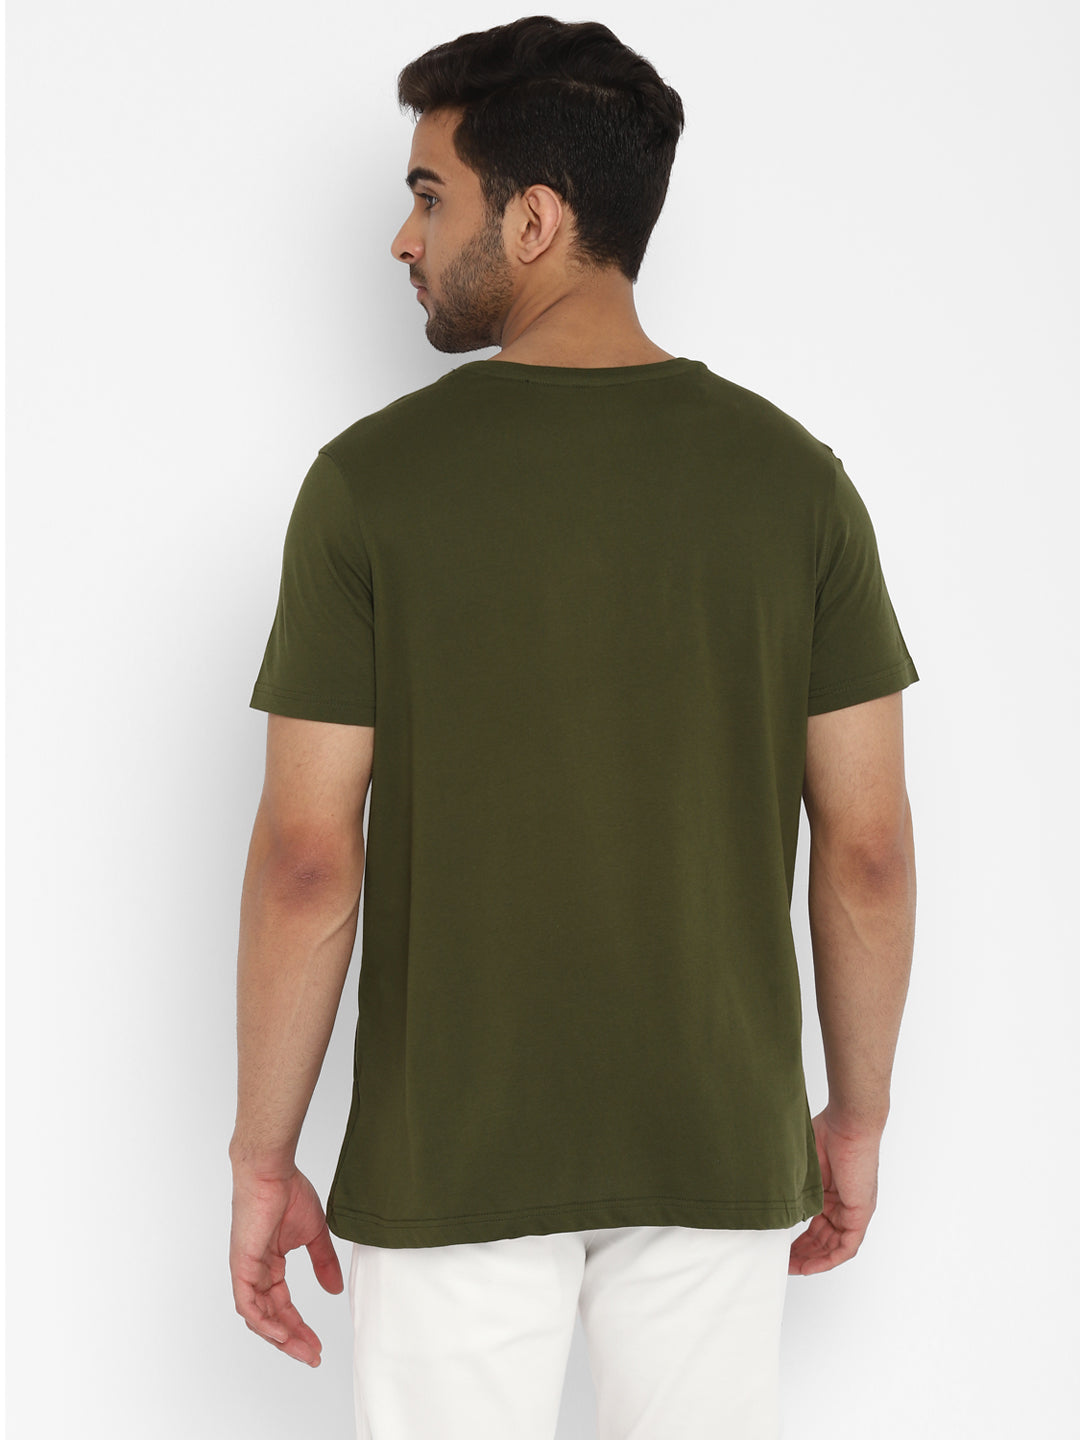 Essentials Olive Solid Round Neck T-Shirt